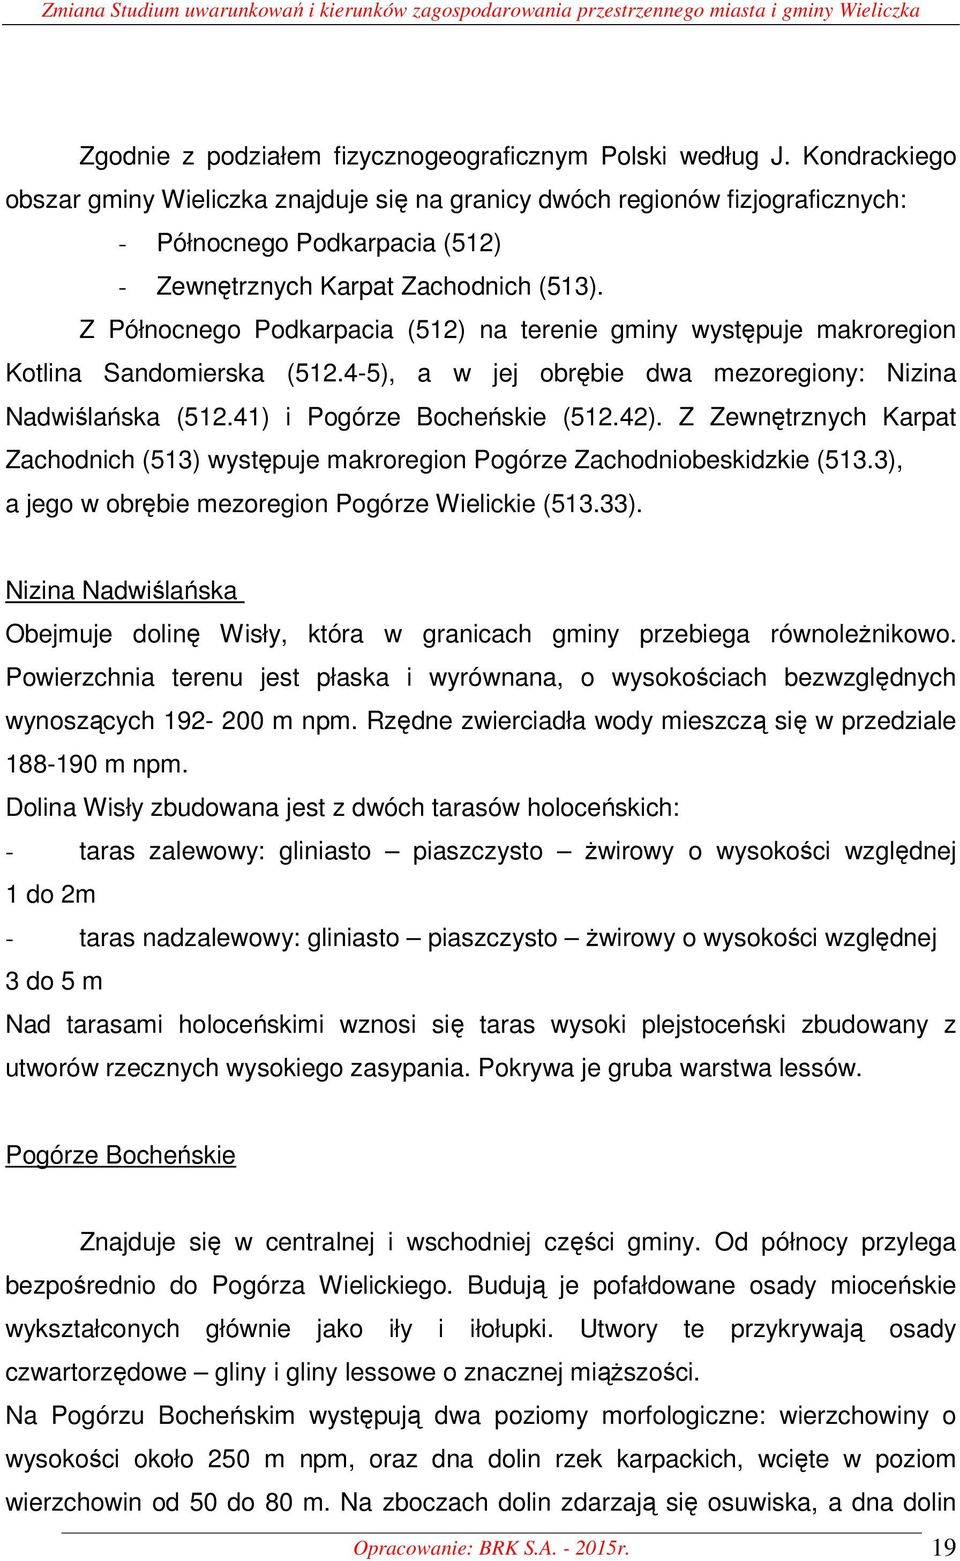 Z Północnego Podkarpacia (512) na terenie gminy występuje makroregion Kotlina Sandomierska (512.4-5), a w jej obrębie dwa mezoregiony: Nizina Nadwiślańska (512.41) i Pogórze Bocheńskie (512.42).